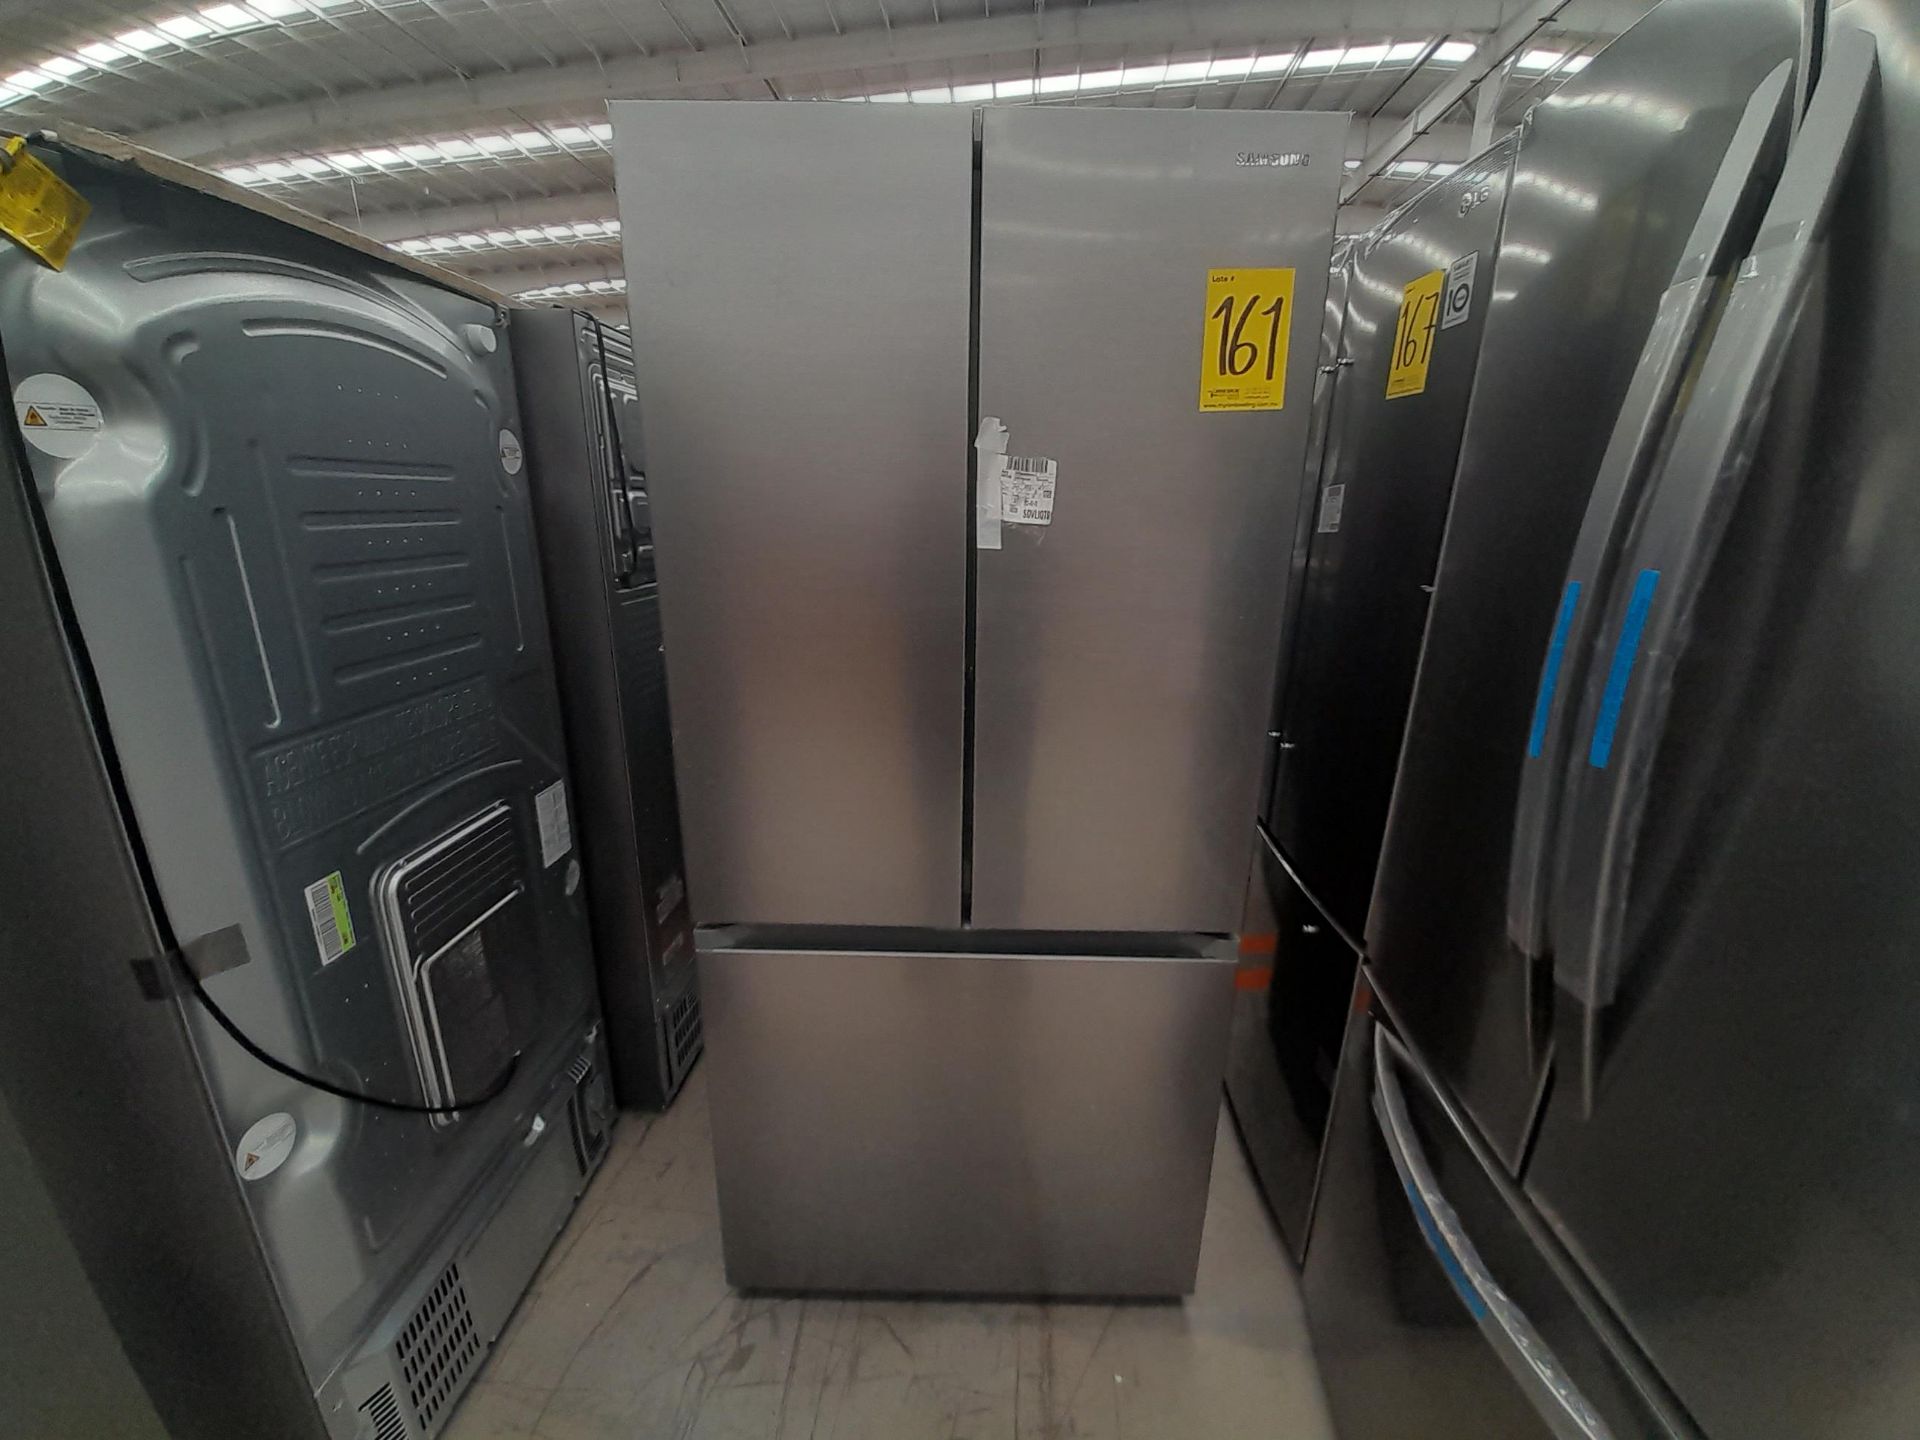 (NUEVO) Lote de 1 Refrigerador Marca SAMSUNG, Modelo RF25C5151S9, Color GRIS.